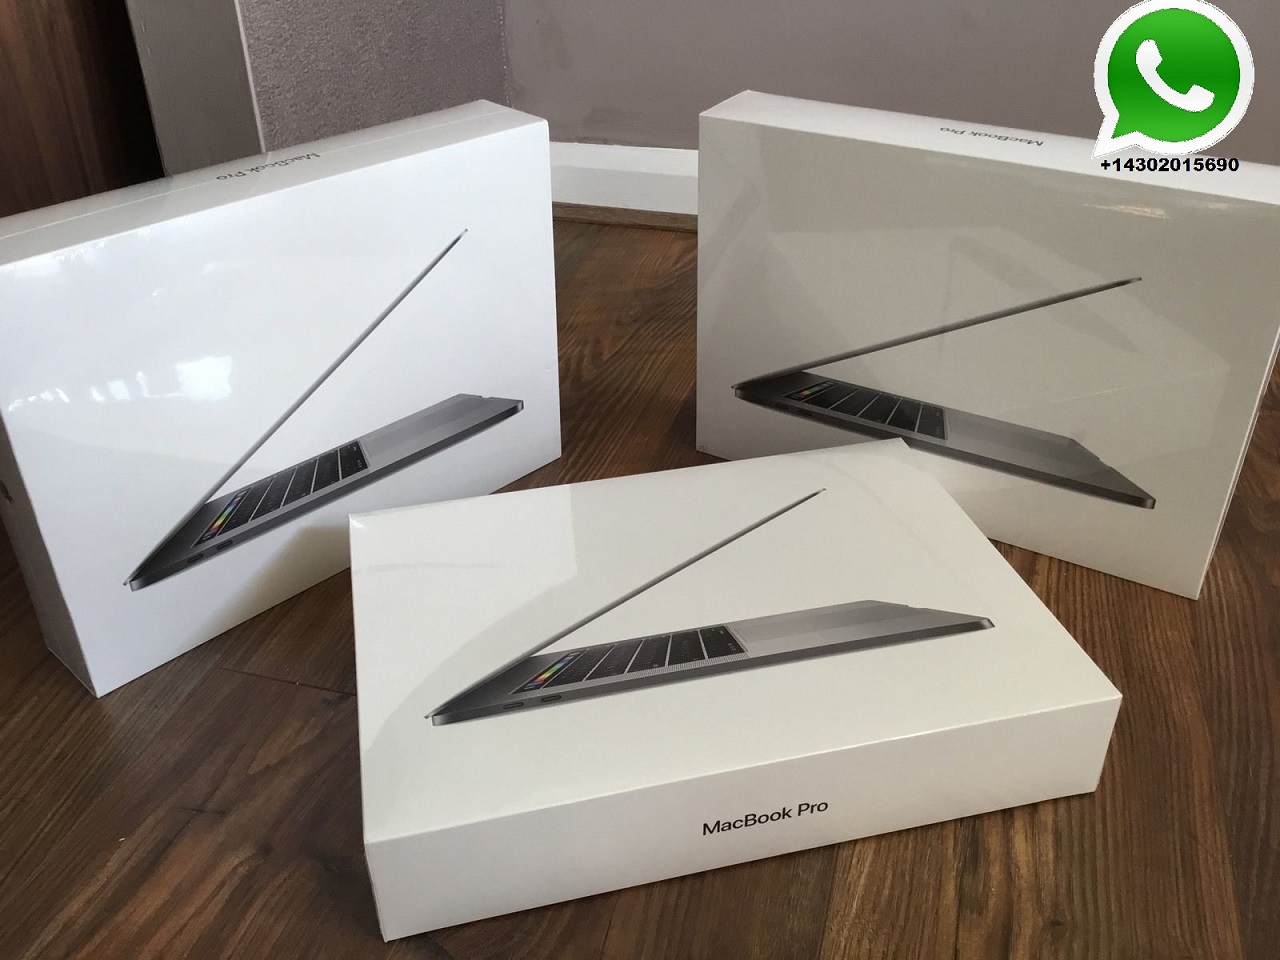 offer original Samsung S9 S9Plus iPhoneX Macbook Pro Air